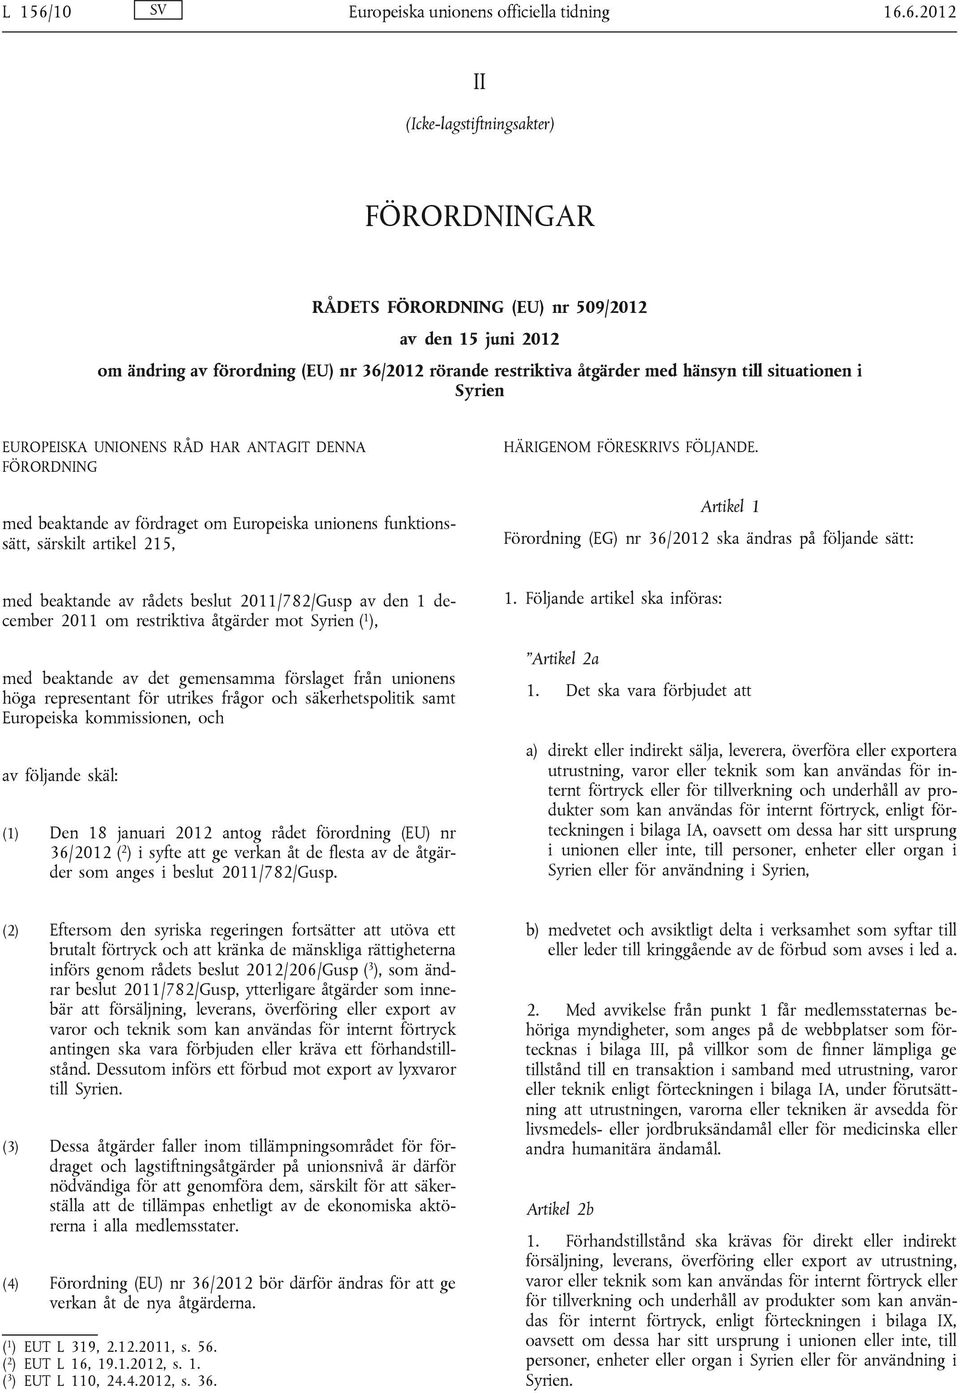 6.2012 II (Icke-lagstiftningsakter) FÖRORDNINGAR RÅDETS FÖRORDNING (EU) nr 509/2012 av den 15 juni 2012 om ändring av förordning (EU) nr 36/2012 rörande restriktiva åtgärder med hänsyn till